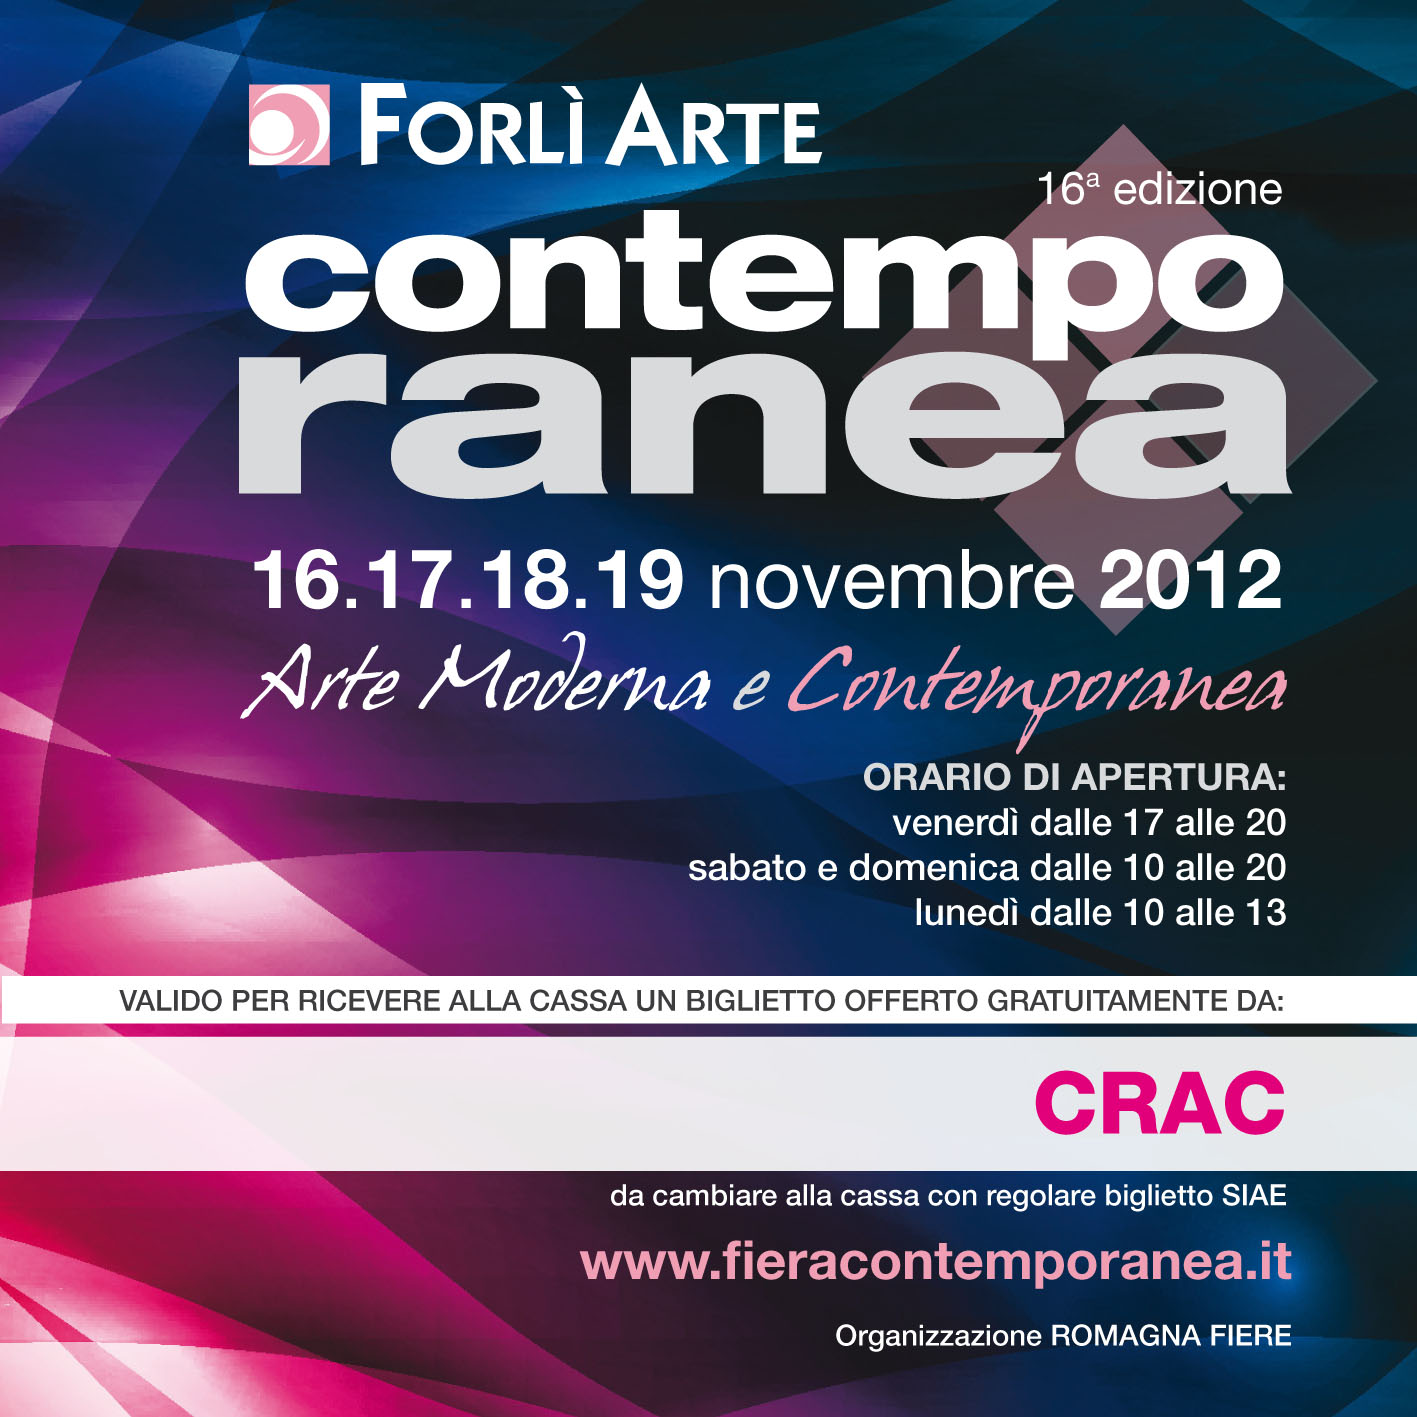 Coupon valido per ricevere un biglietto d'ingresso alla Fiera d'Arte Contemporanea di Forlì: Novembre 2012